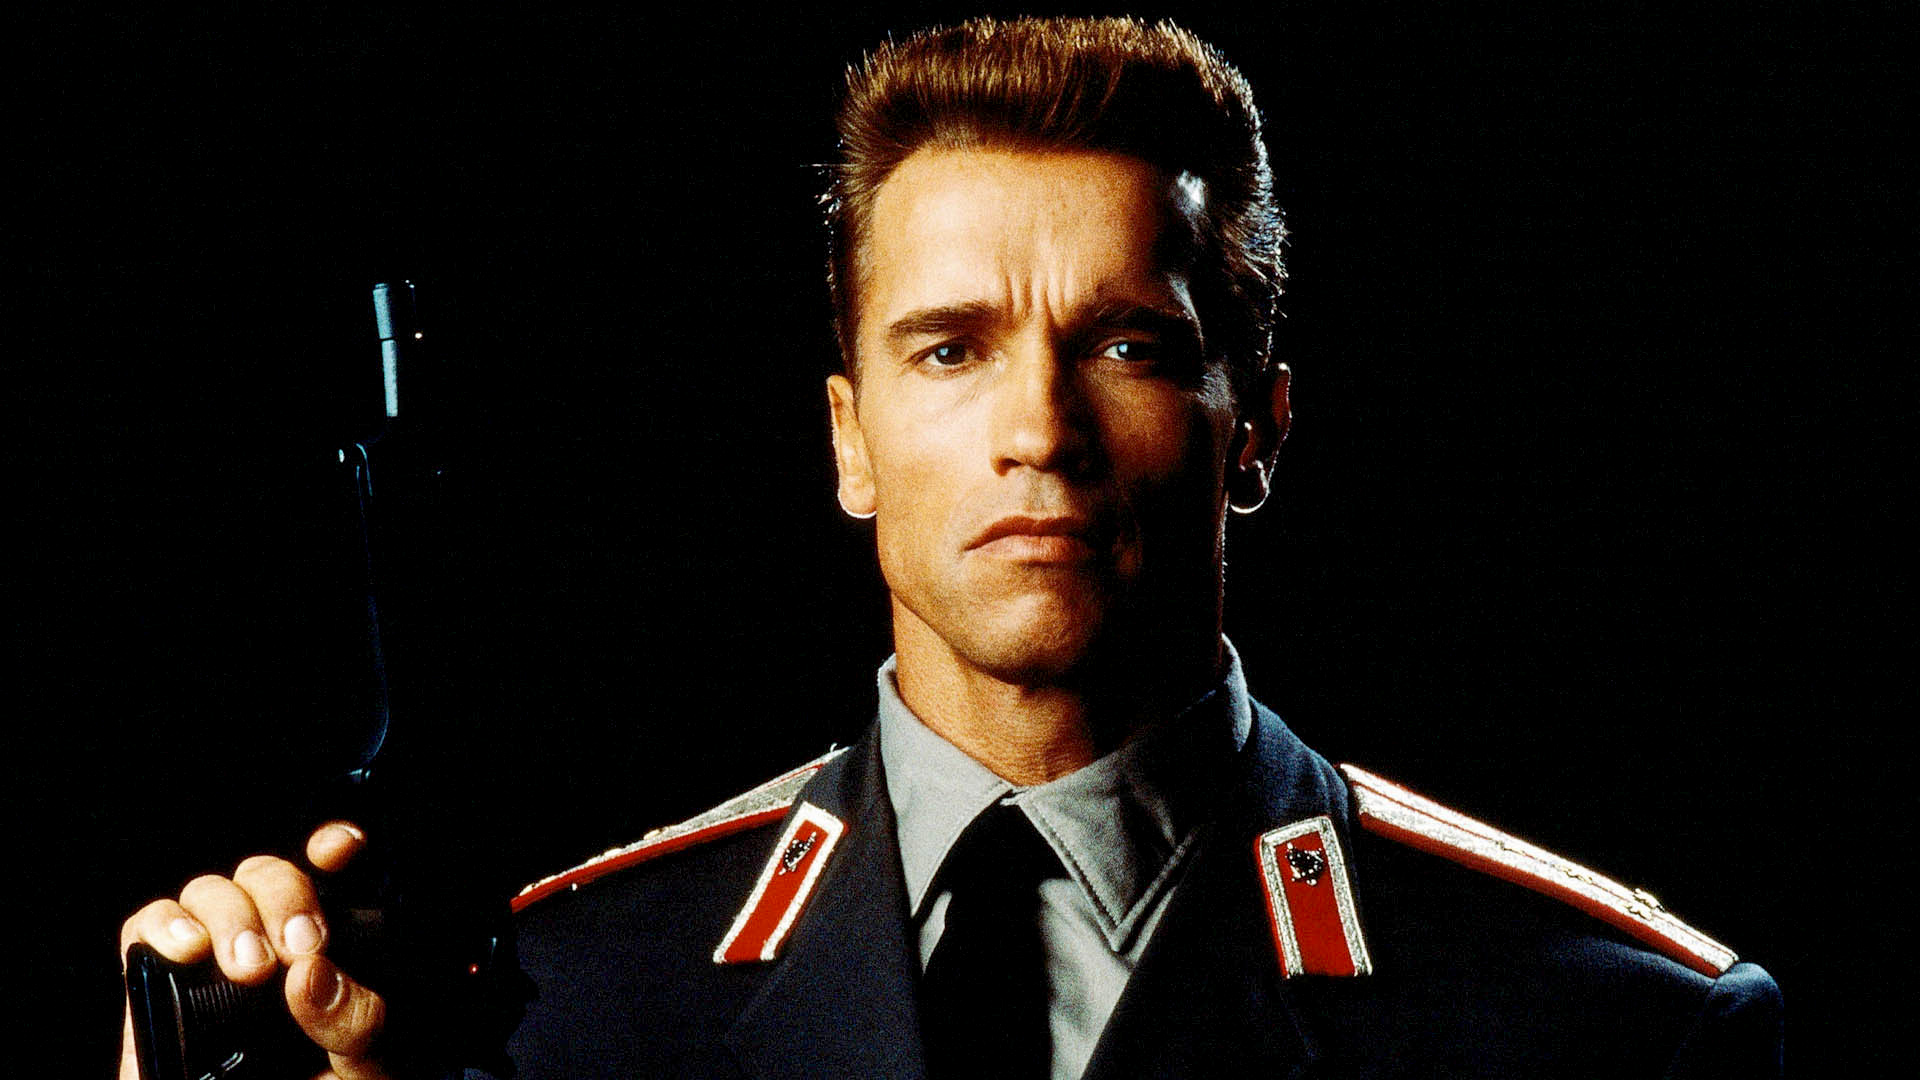 Wallpaper Red Heat, 1988 movie, Arnold Schwarzenegger, actor, gun, soldier